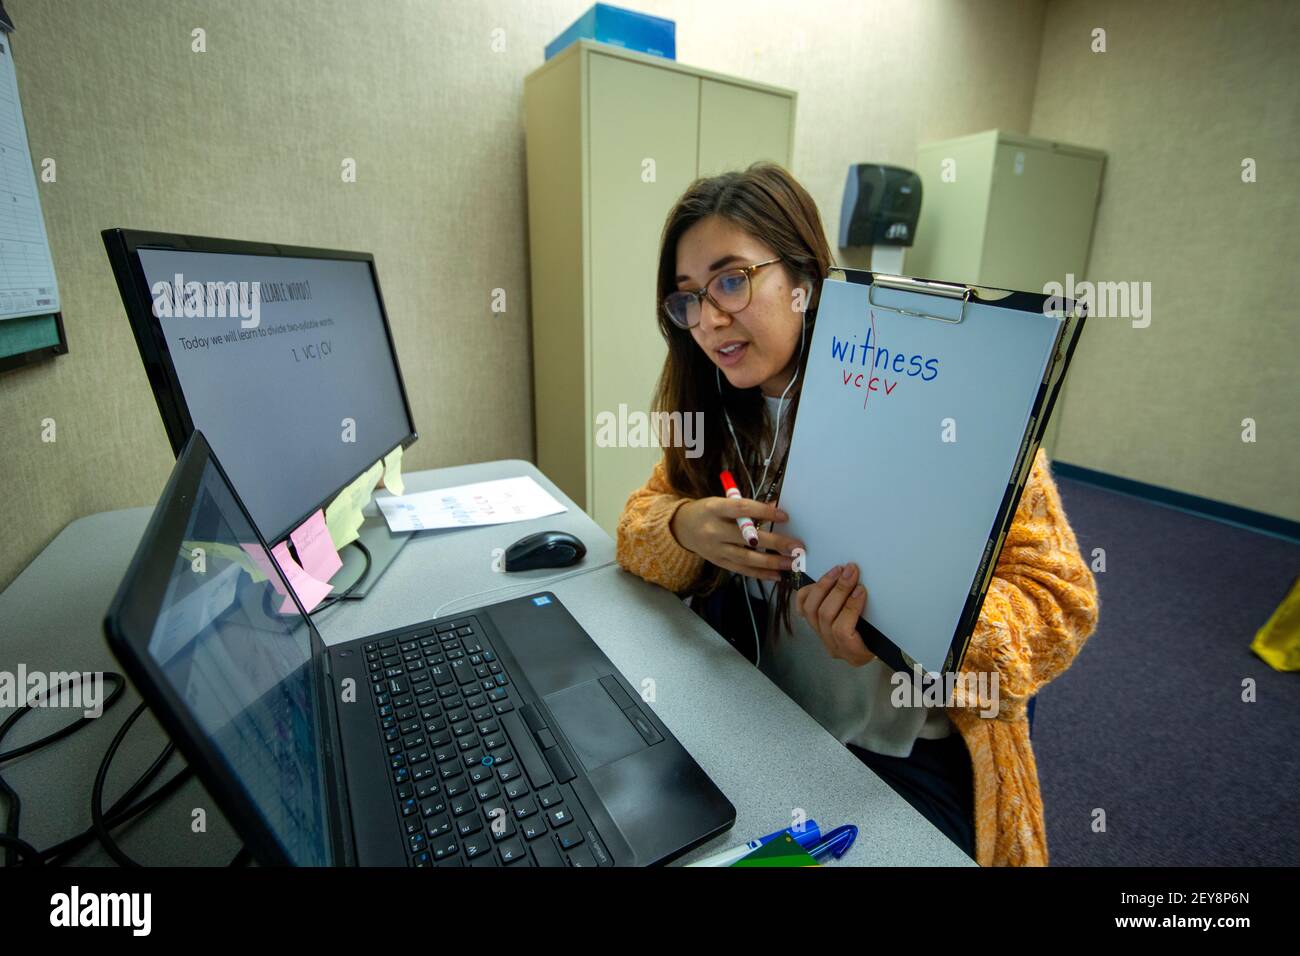 Eine kalifornische Grundschullehrerin hält ein geschriebenes Blatt des zweisilbigen Wortes "Zeuge" hoch und erklärt Vokale und Konsonanten für ein Schülerwesen Stockfoto